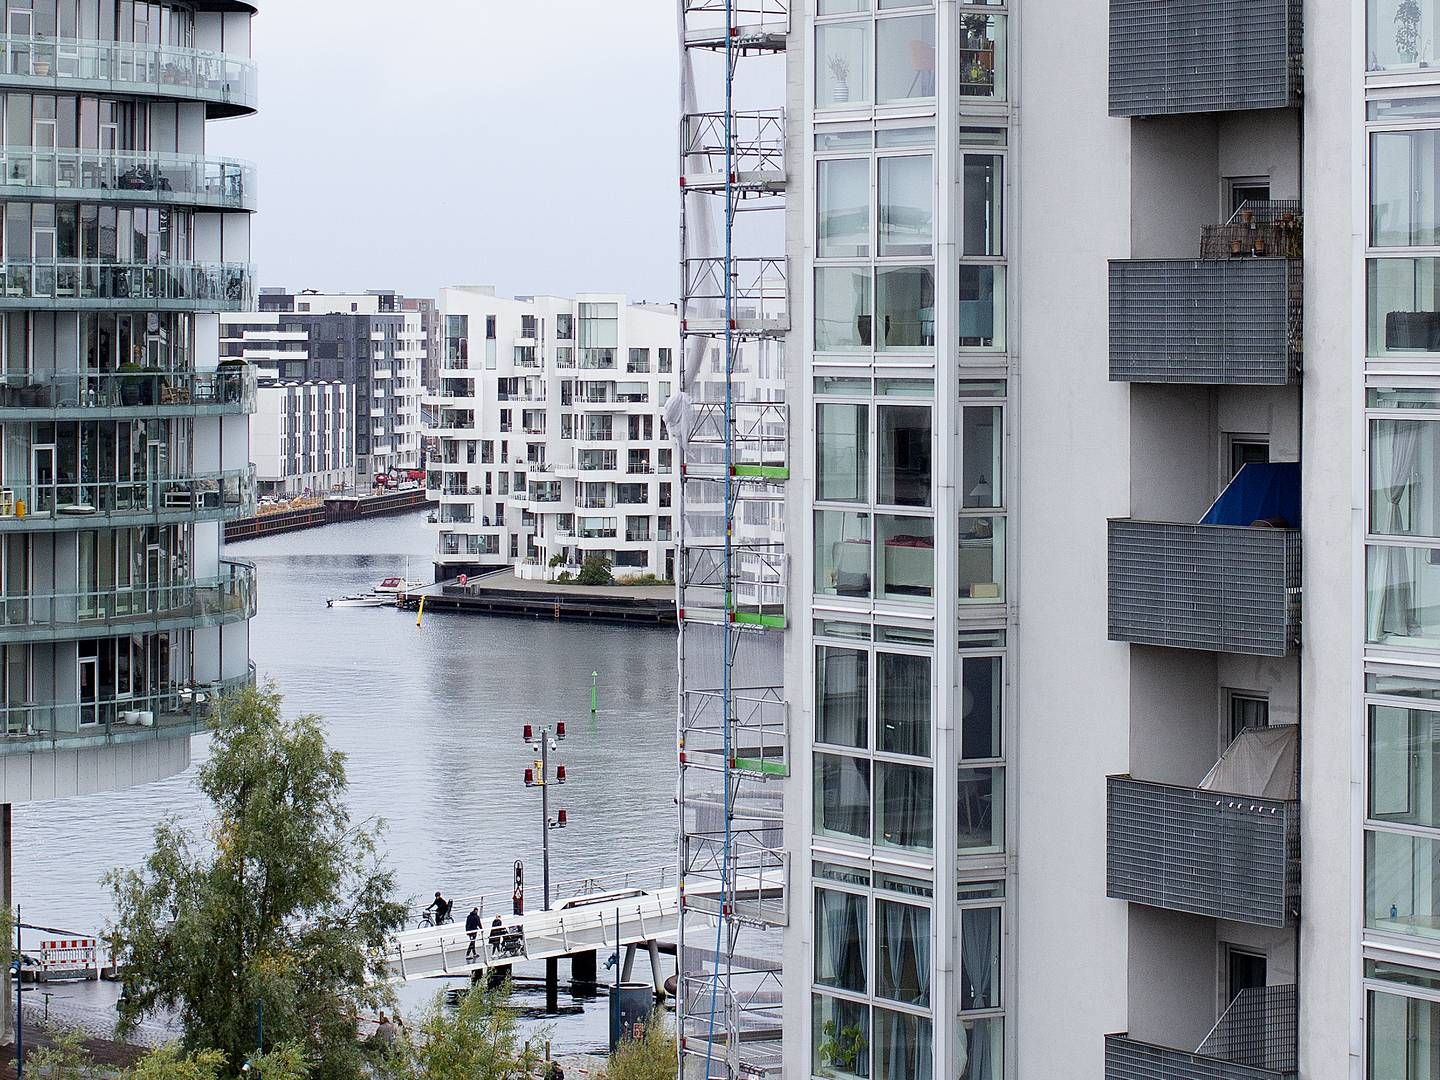 Lejligheder med udsigt i København | Foto: Thomas Borberg / Ritzau Scanpix